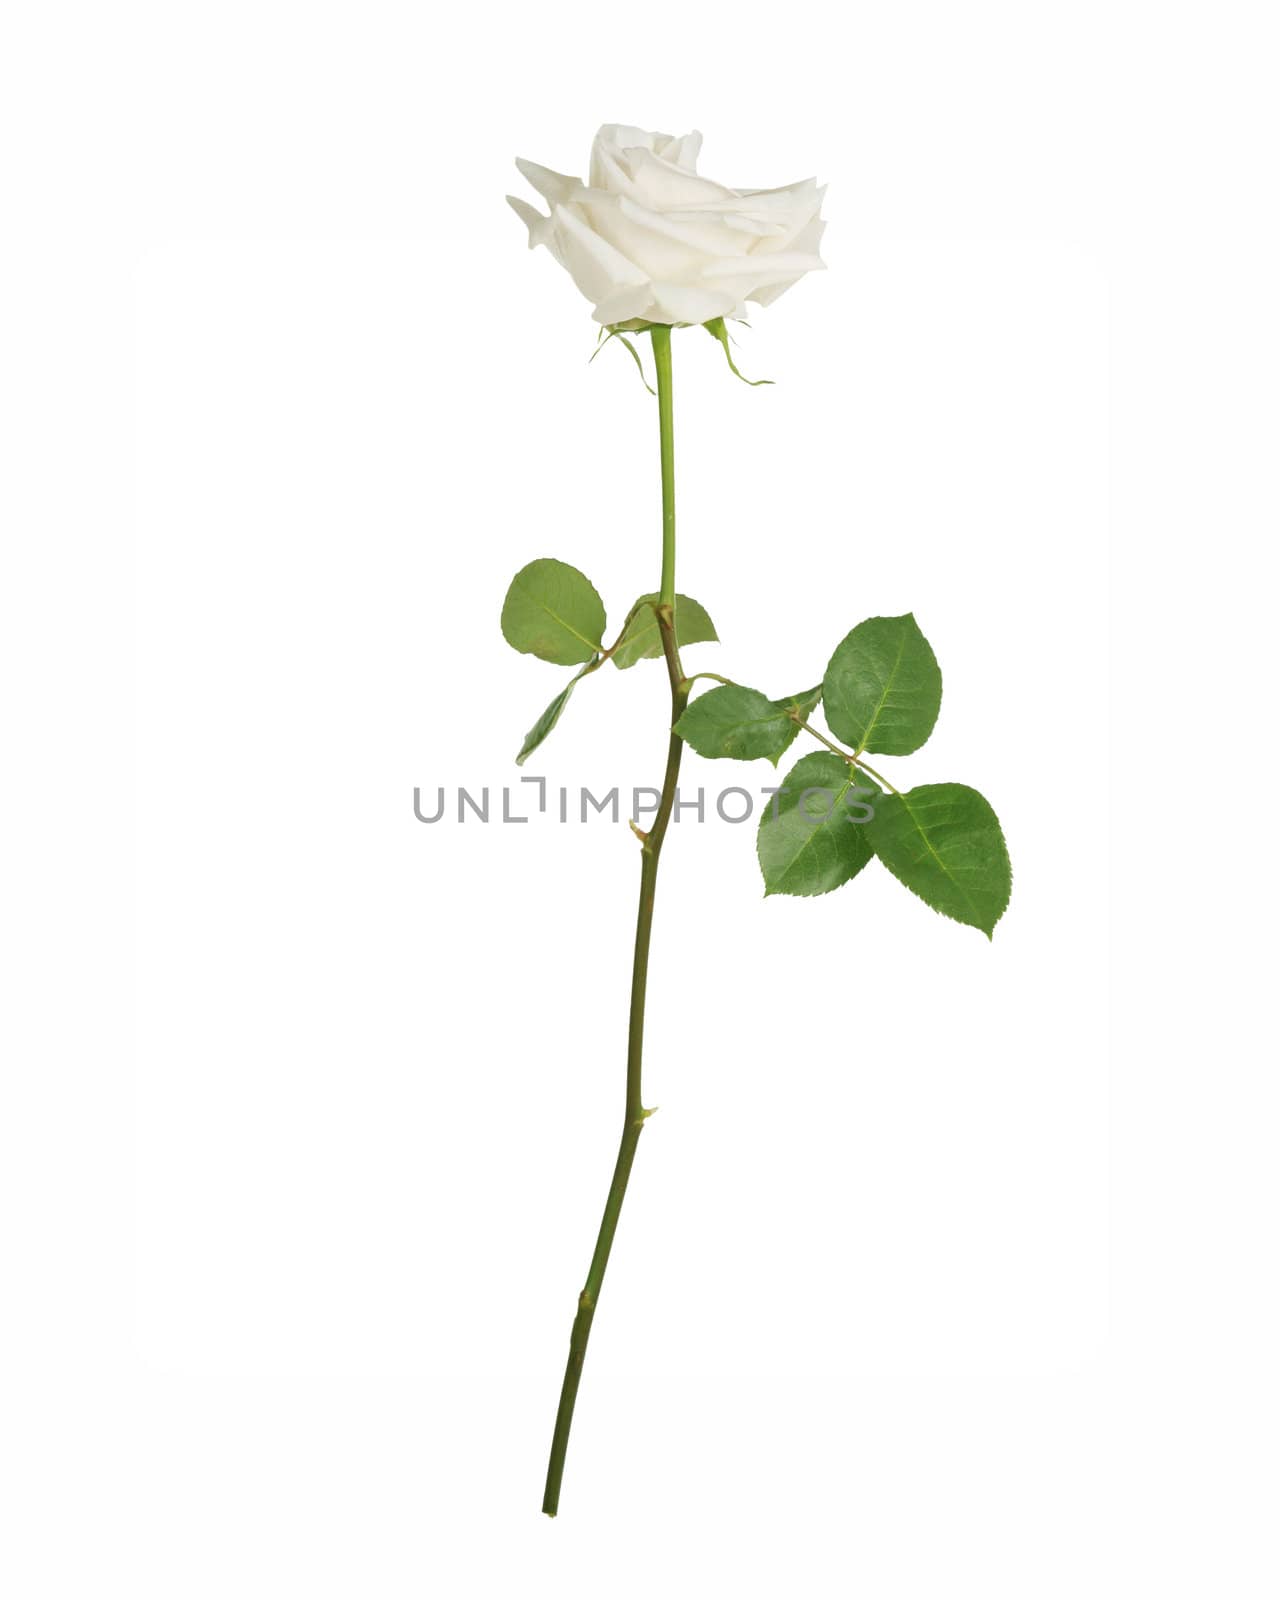 Single white rose, isolated on white